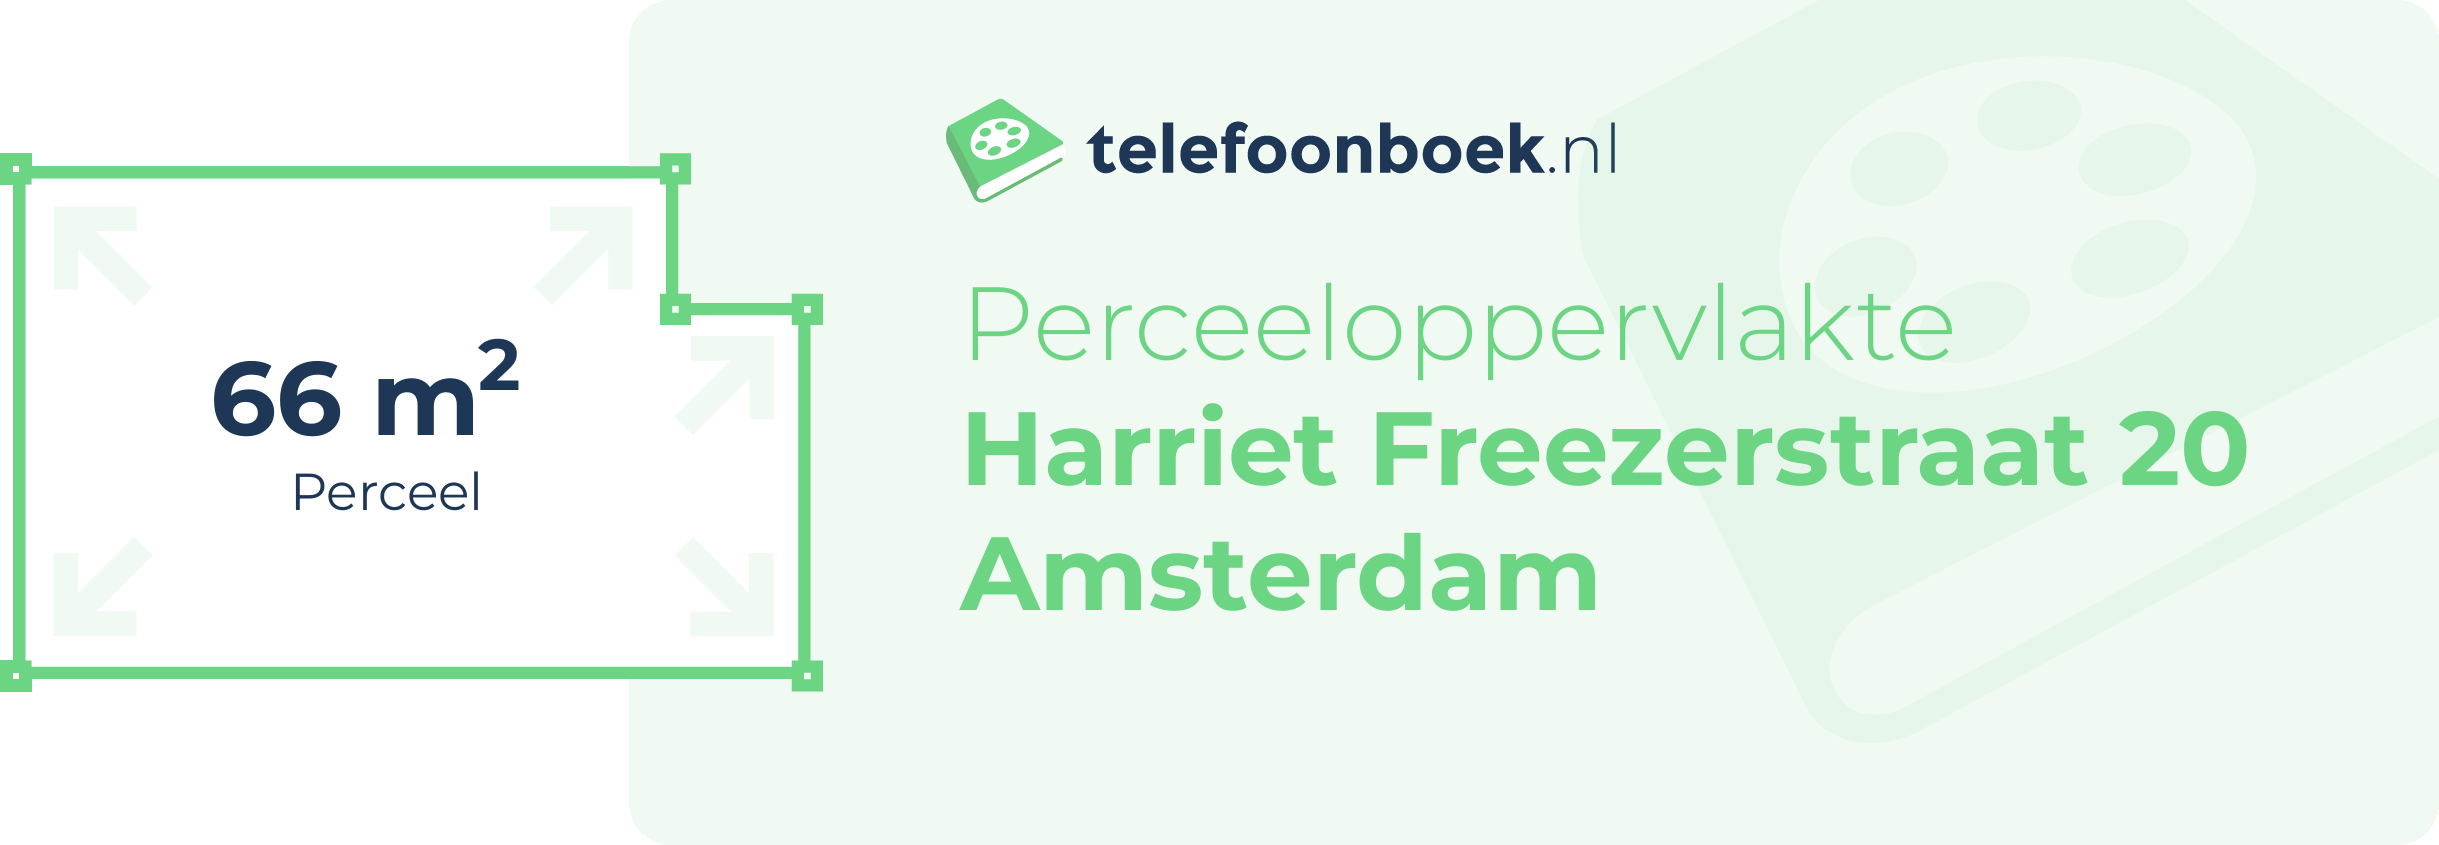 Perceeloppervlakte Harriet Freezerstraat 20 Amsterdam